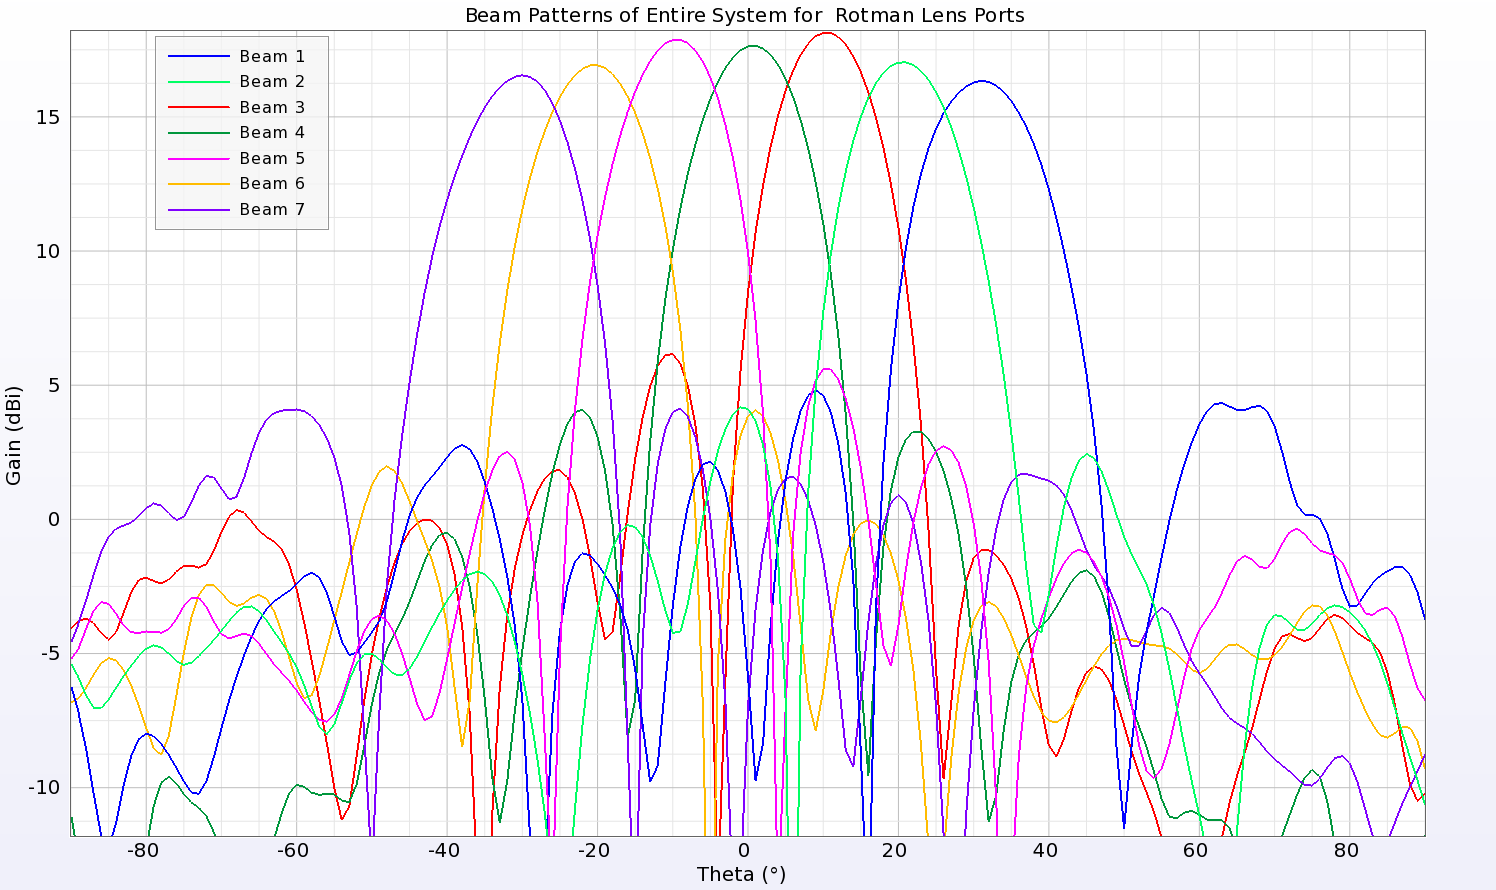 图 18：整个系统产生的波束以增益模式绘制，可以看出与其他波束模式图相似，波束间距为 10 度，从 -30 度到 30 度，幅度接近相等。